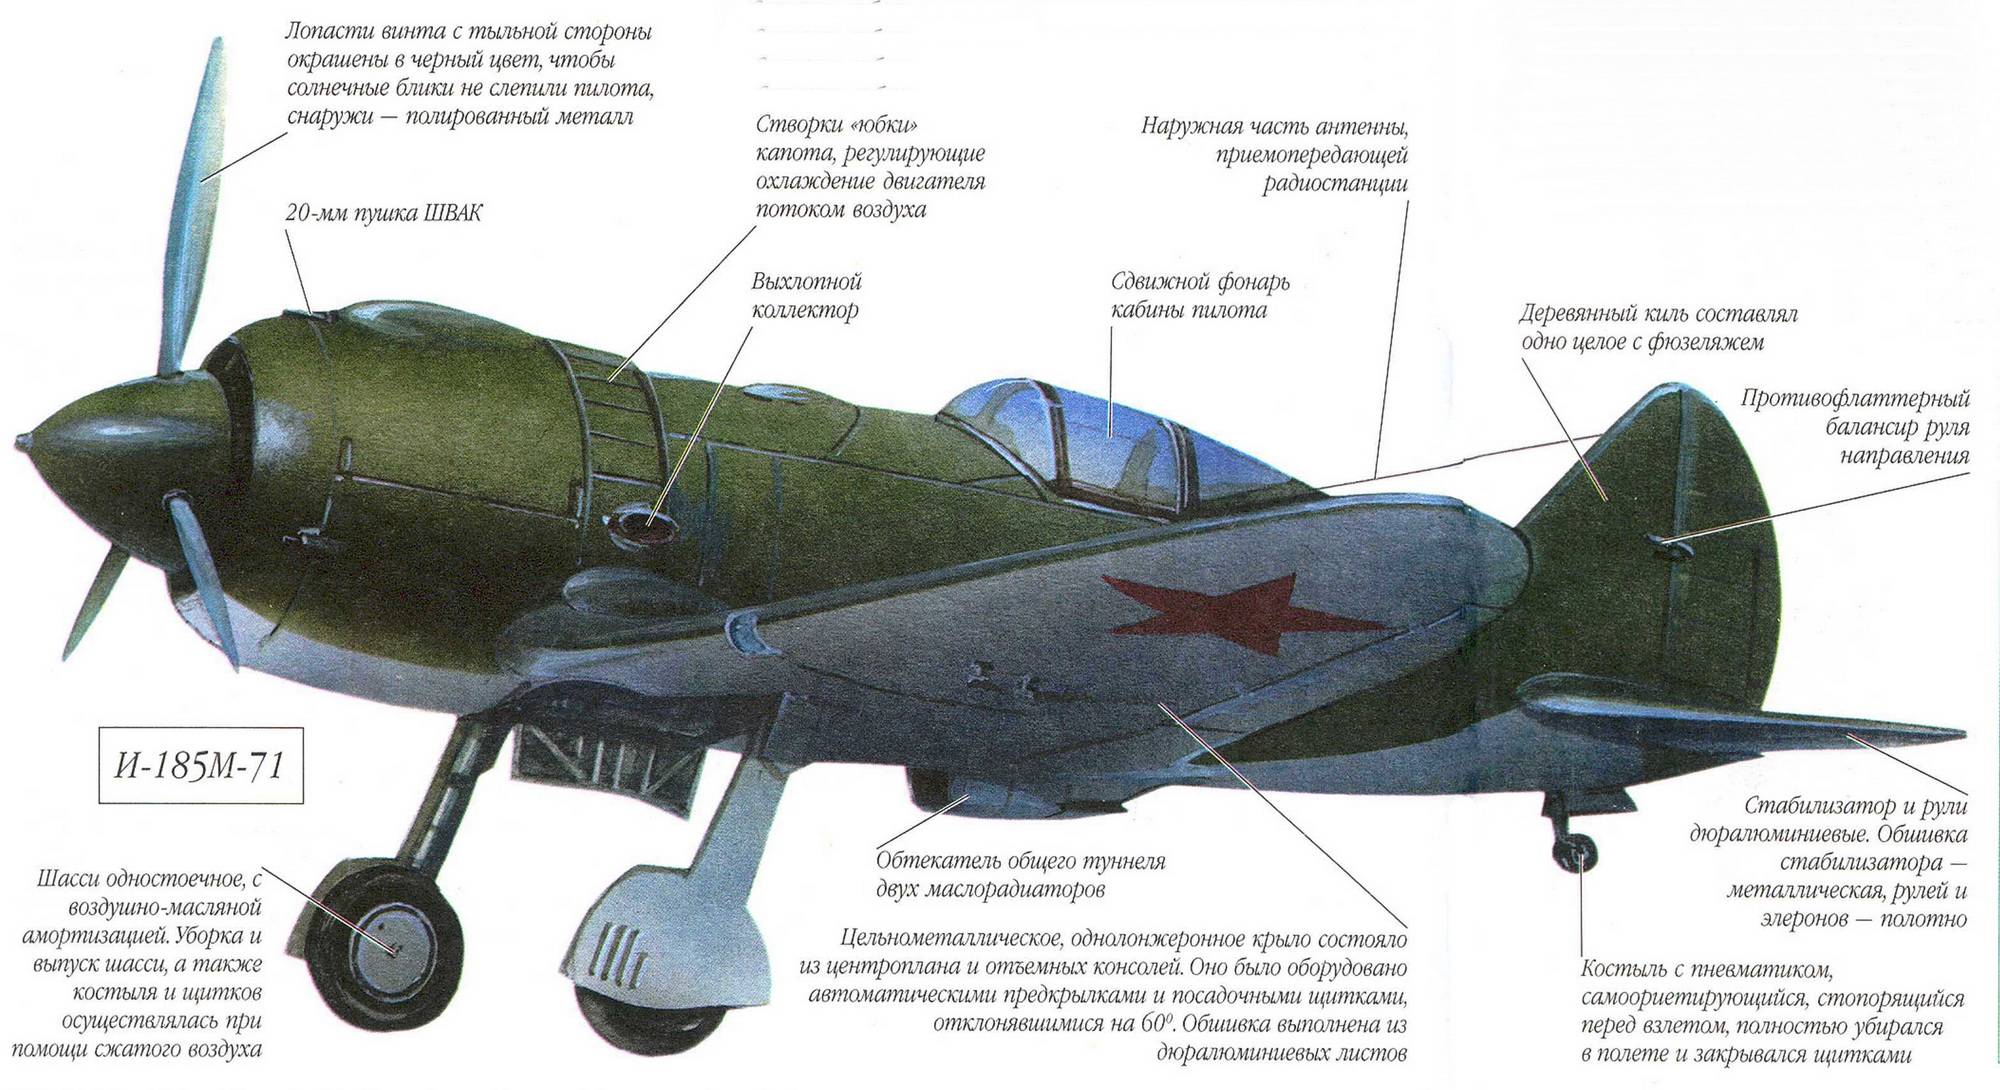 Истребитель як-9: вооружение самолета, характеристики, история создания и модификации